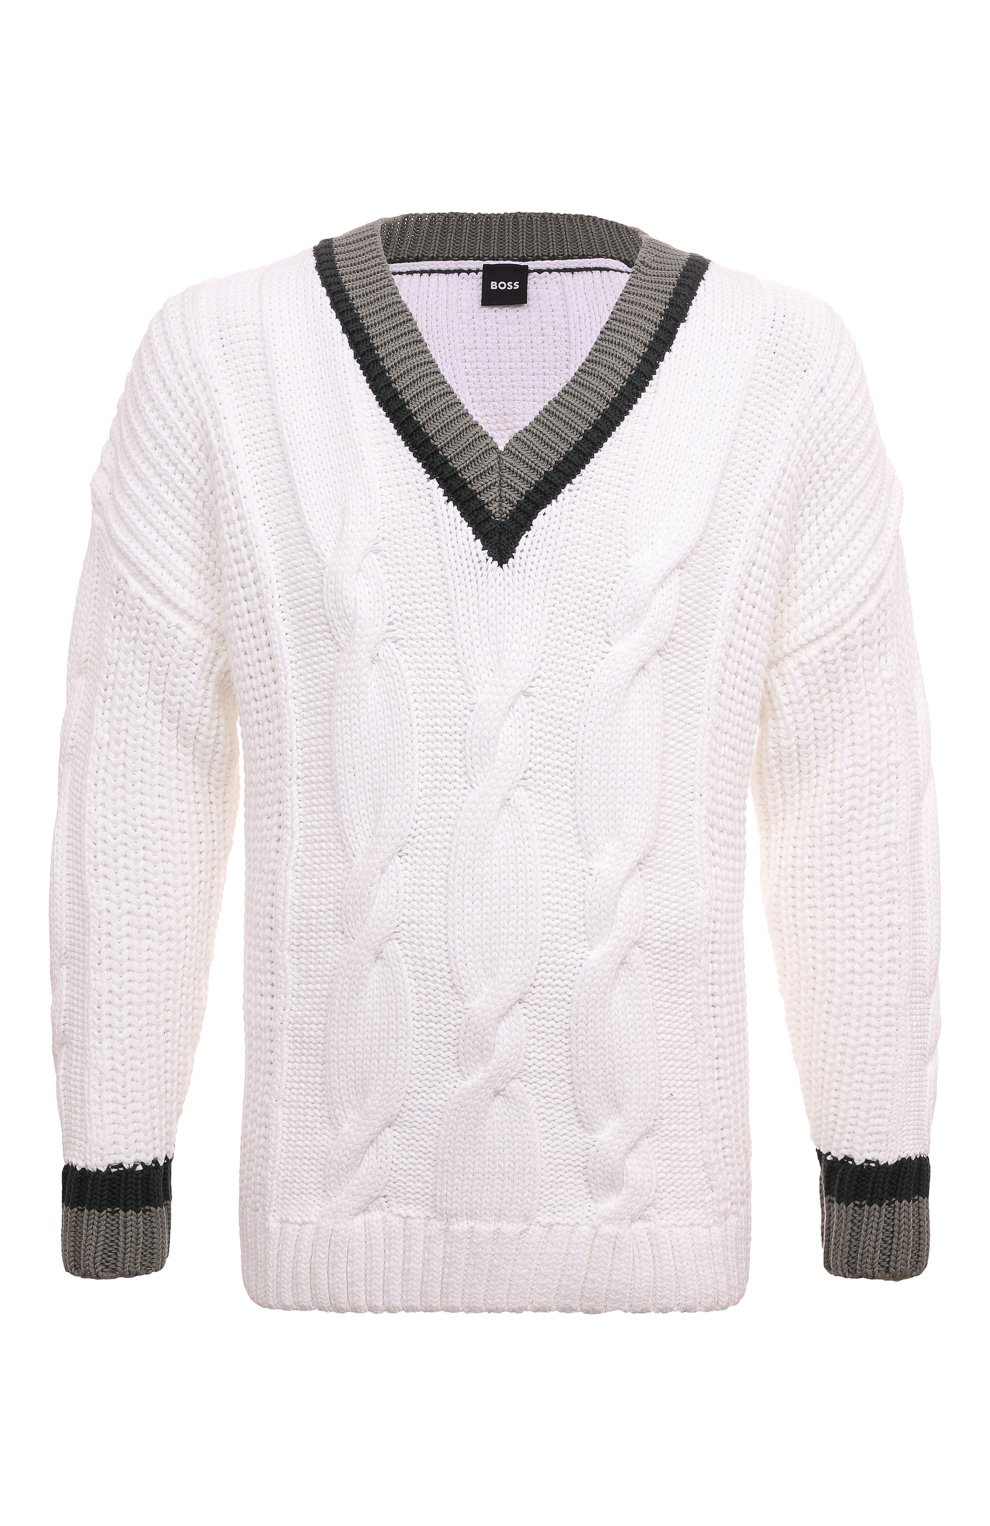 Хлопковый свитер BOSS 50486717, цвет белый, размер 48